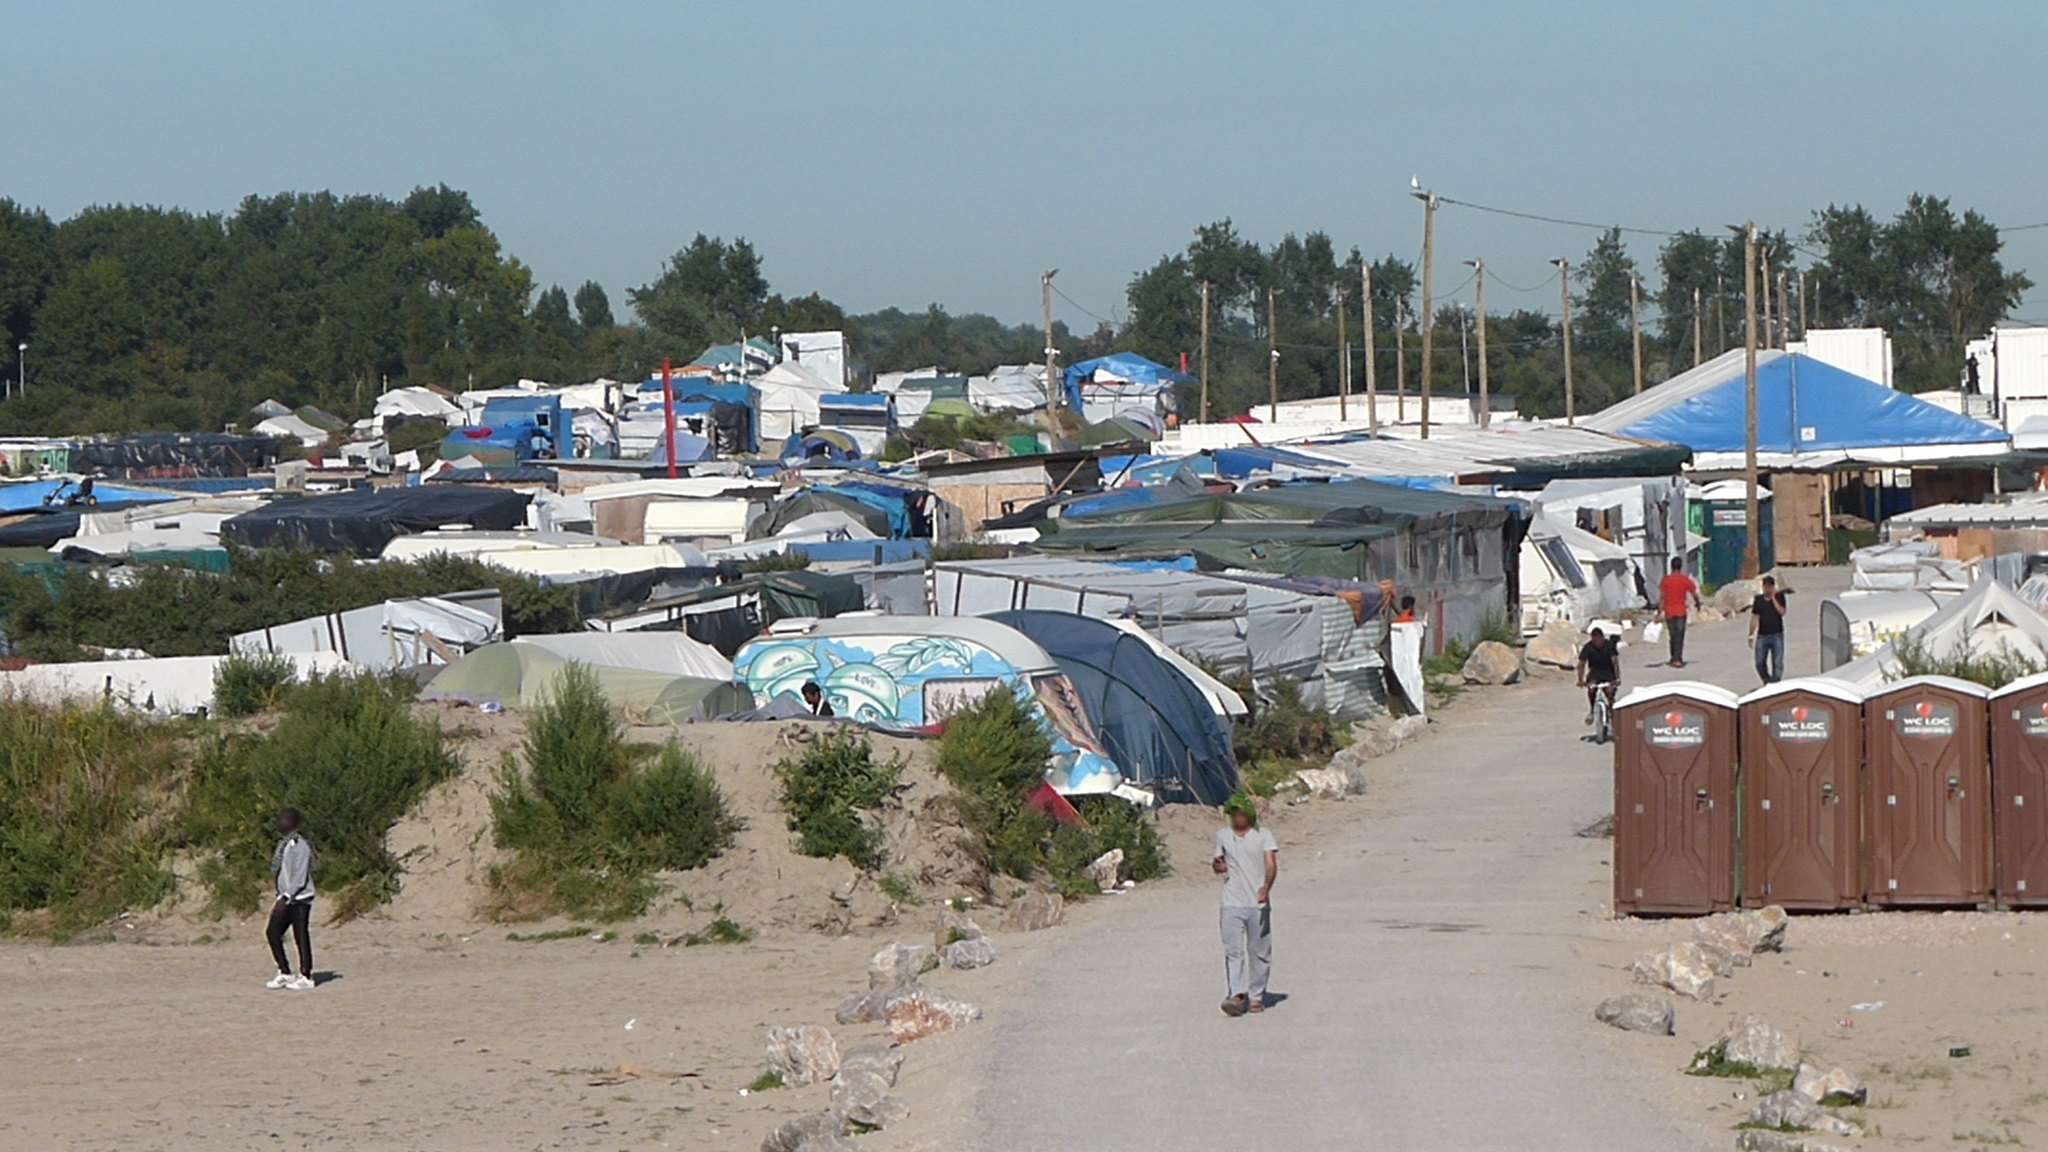 Vue d'un camp d'exilé.e.s à Calais en Aout 2016. Photographie : Javi via licence Creative Commons BY-SA 2.0